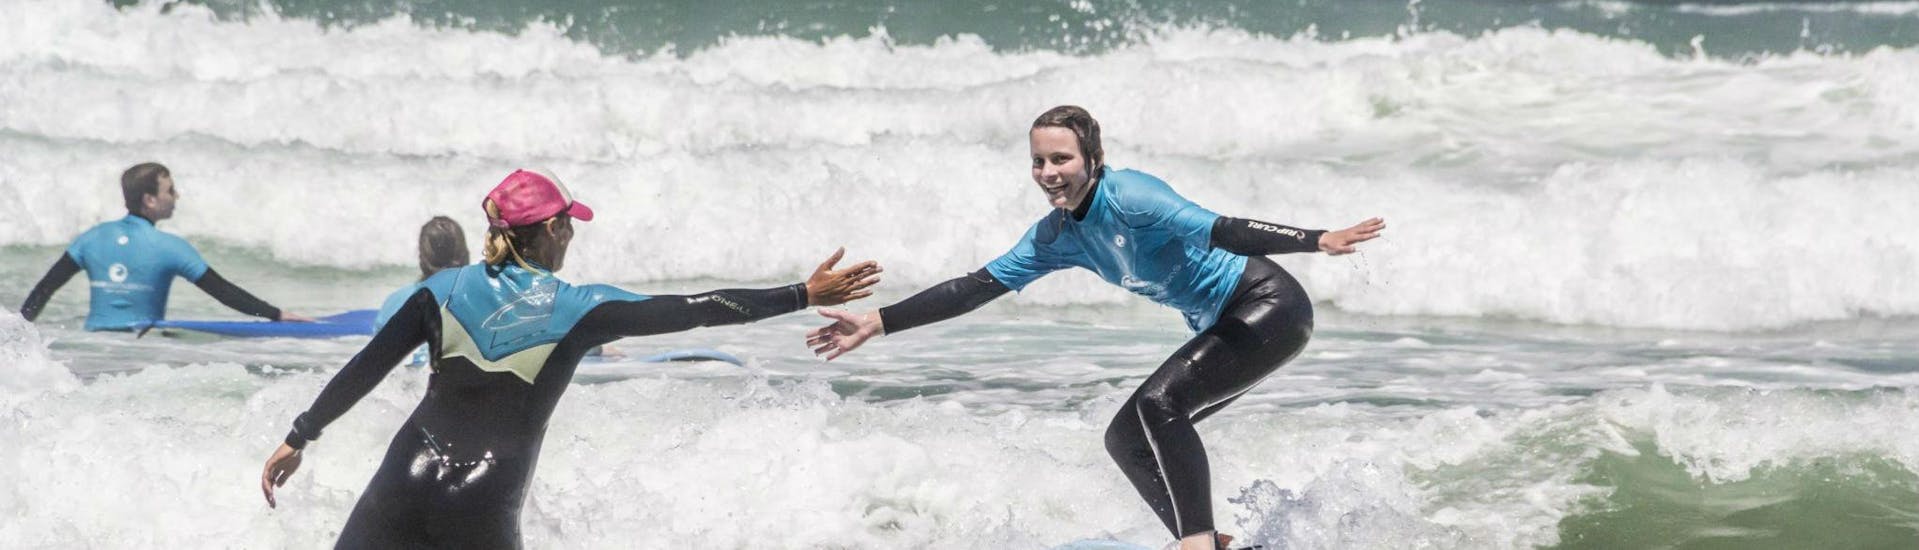 Surflessen in Sagres vanaf 12 jaar voor alle niveaus.